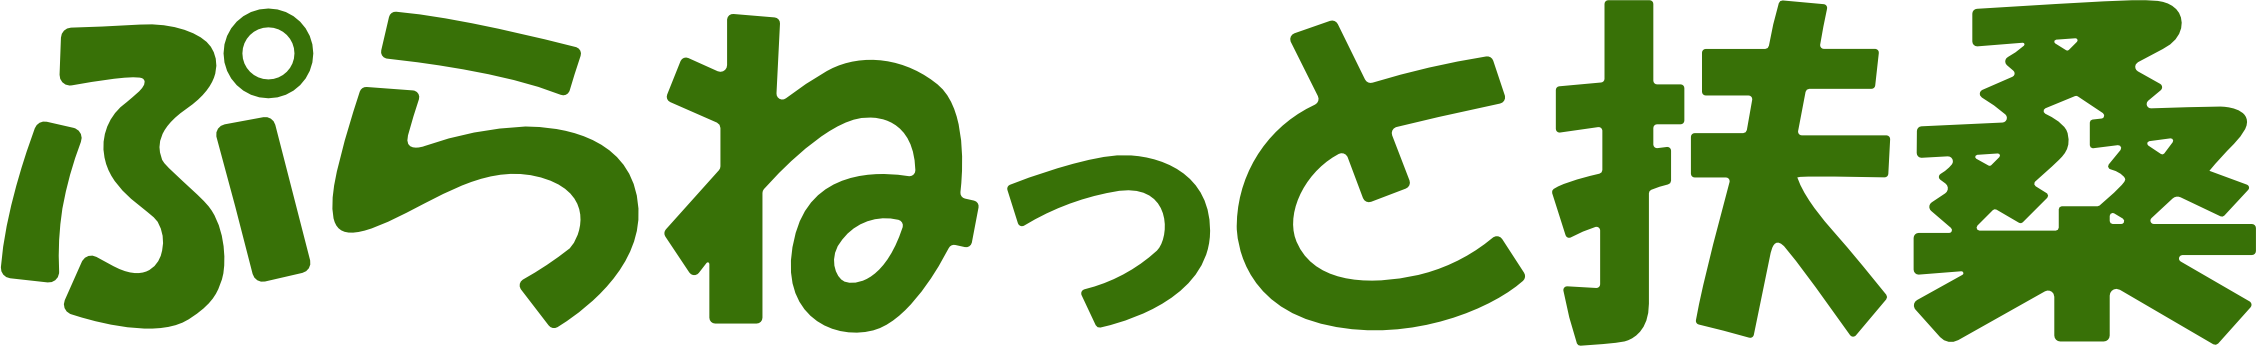 dummy logo